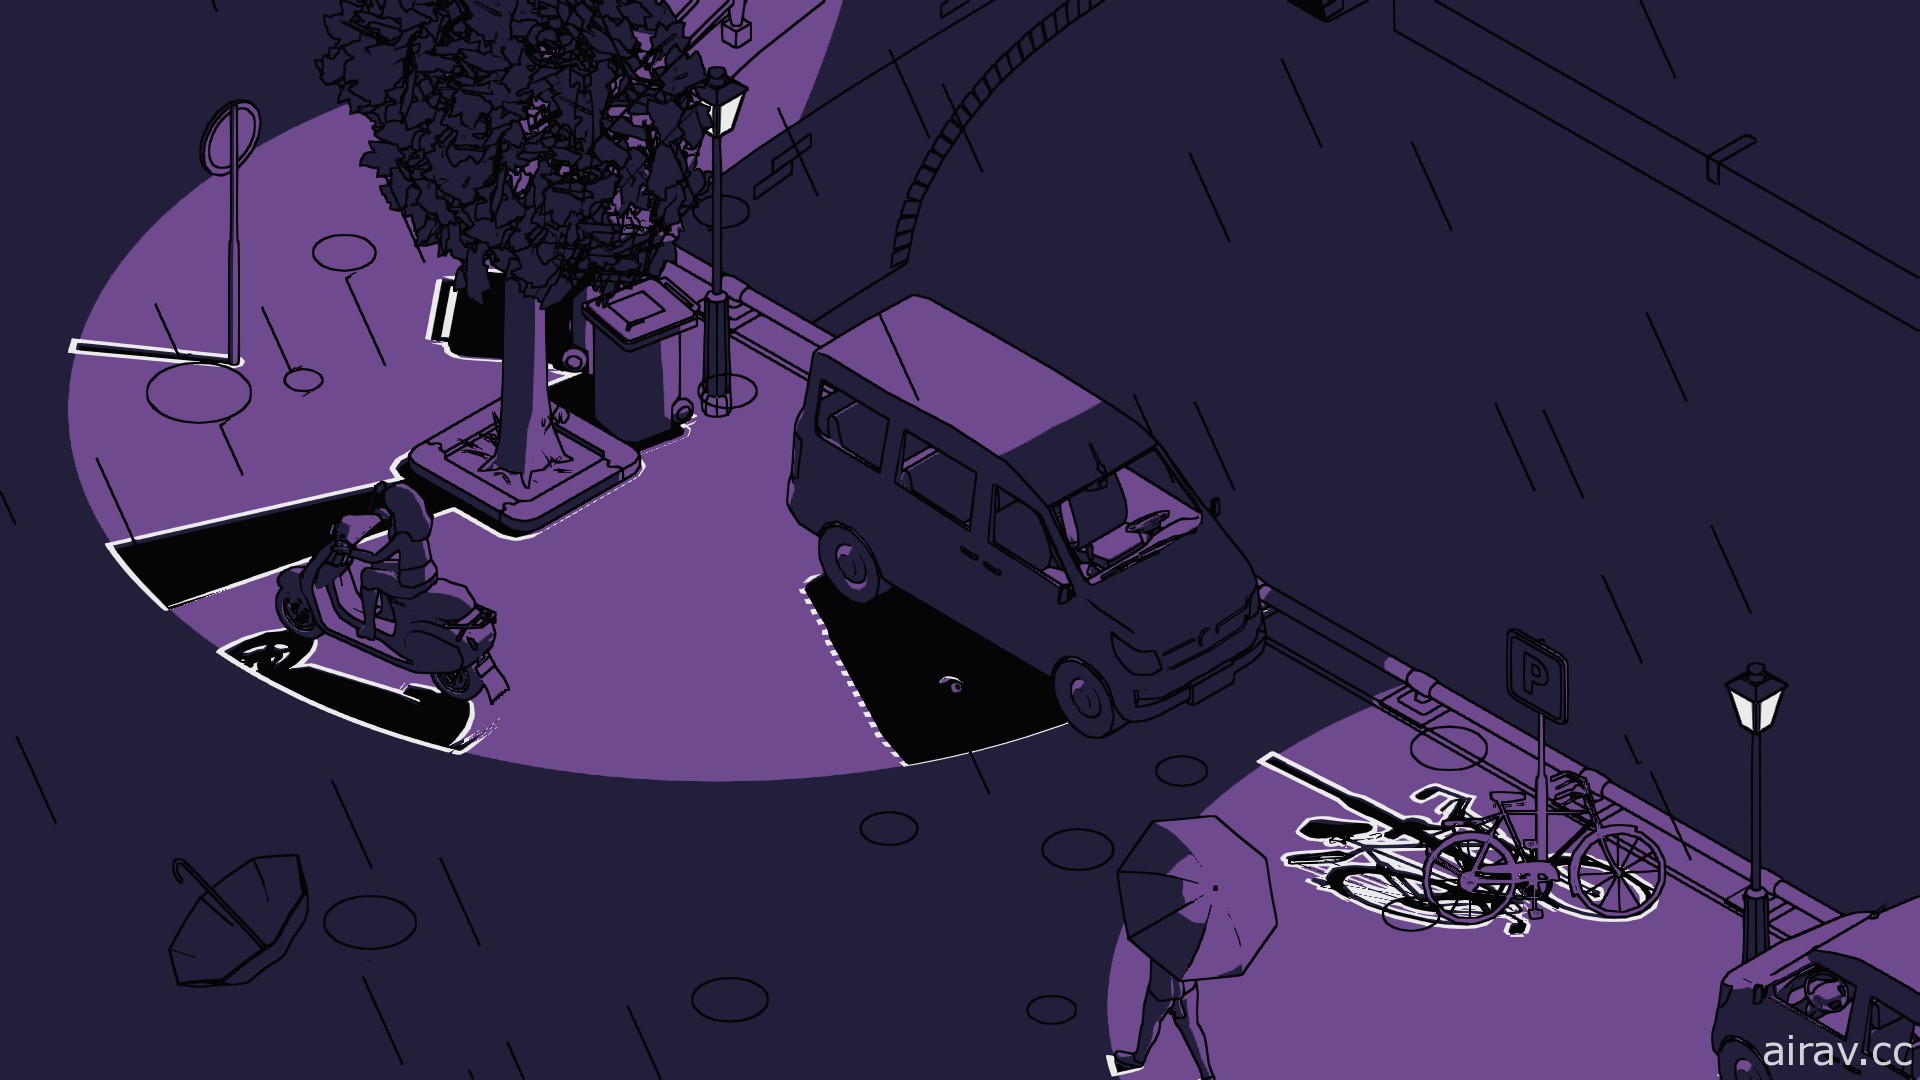 以影子為主題新作《亥靈胎》公開玩法示範影片 幫助它在影子間移動回到對應者身邊